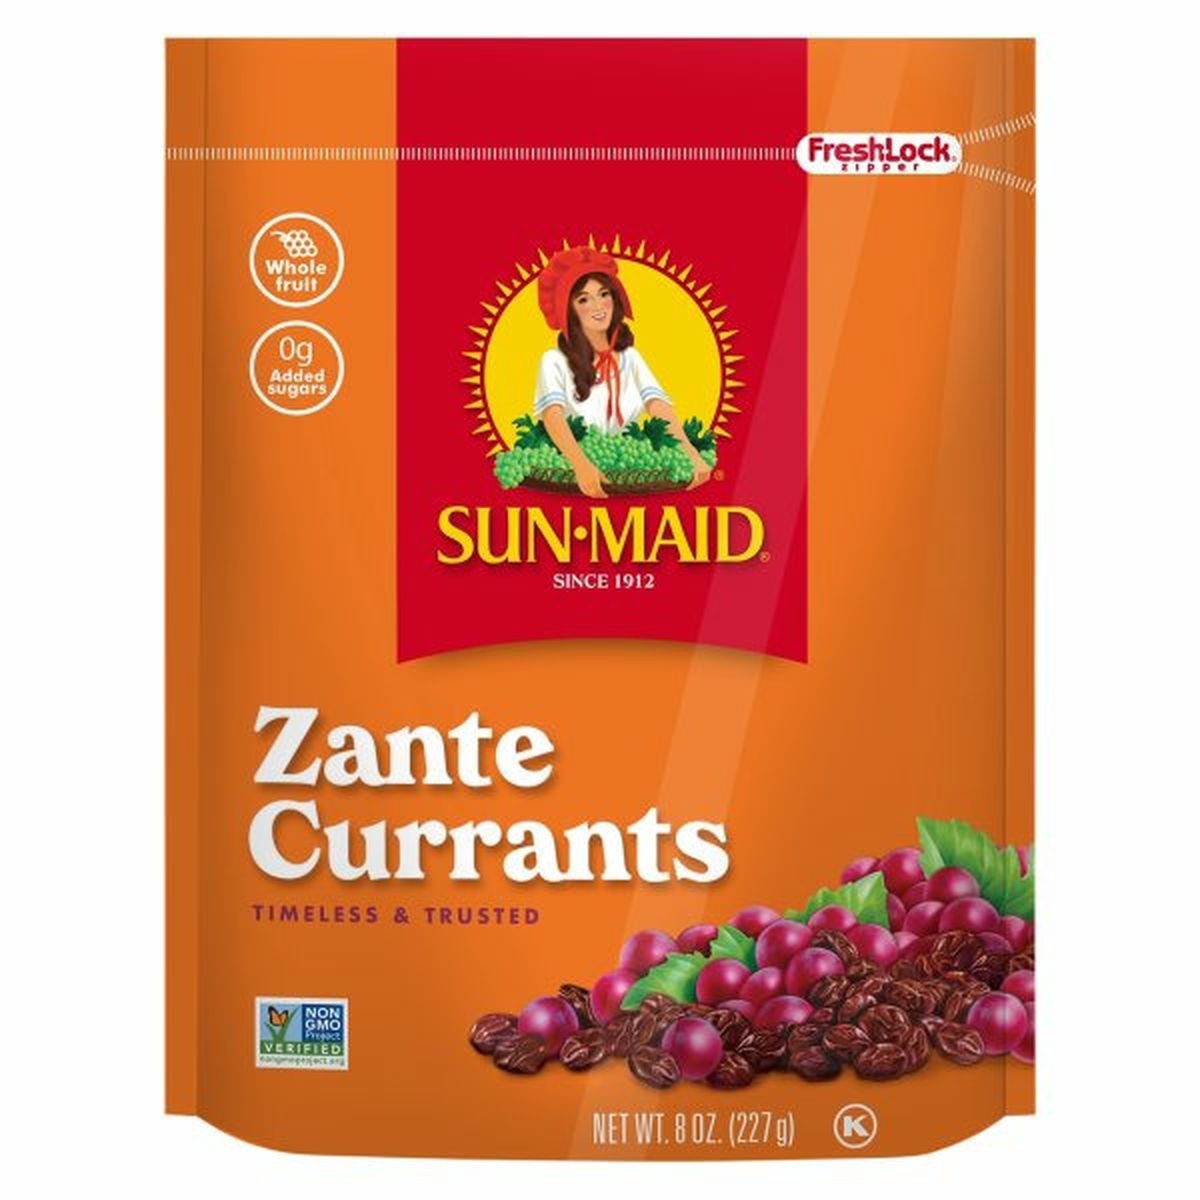 Calories in Sun-Maid Zante Currants